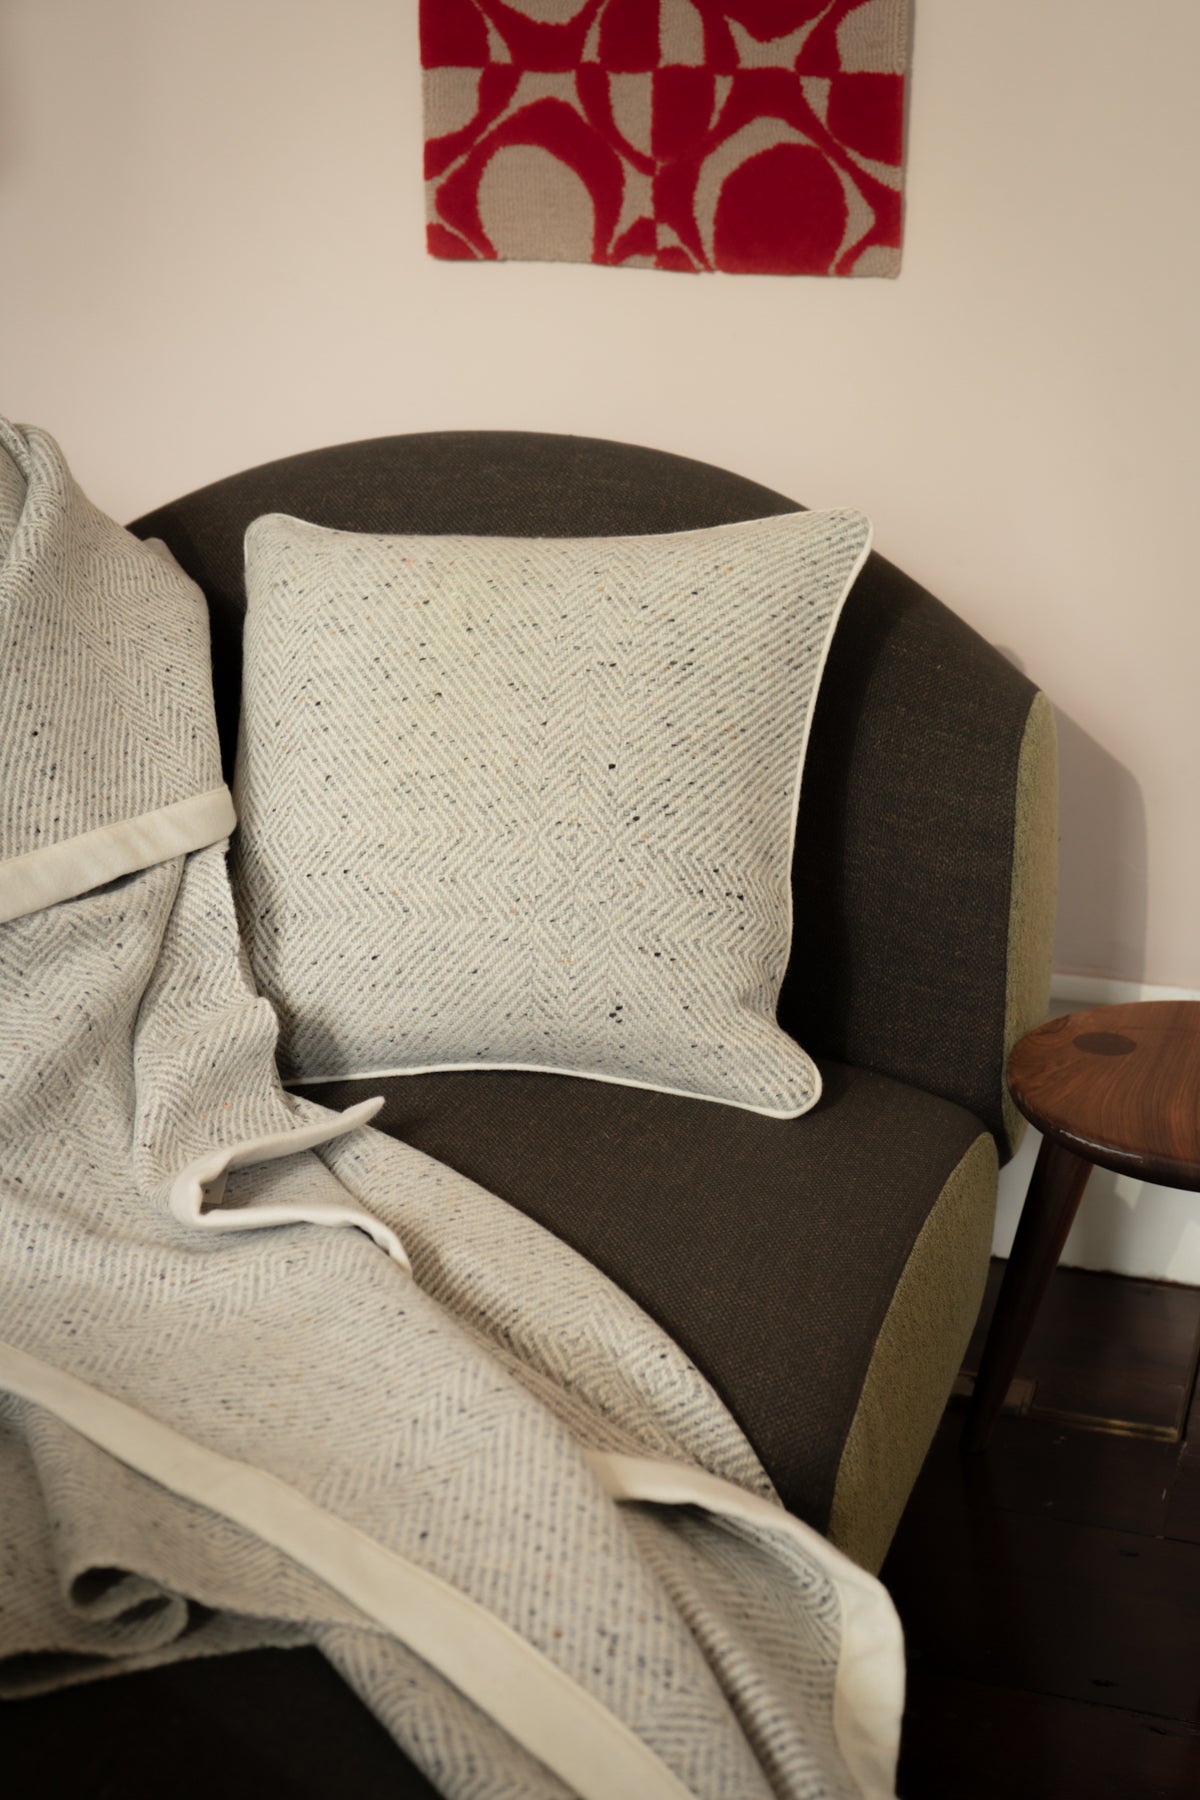 Handwoven Pressed Herringbone Tweed trimmed Blanket in Light Grey-Blankets-STABLE of Ireland